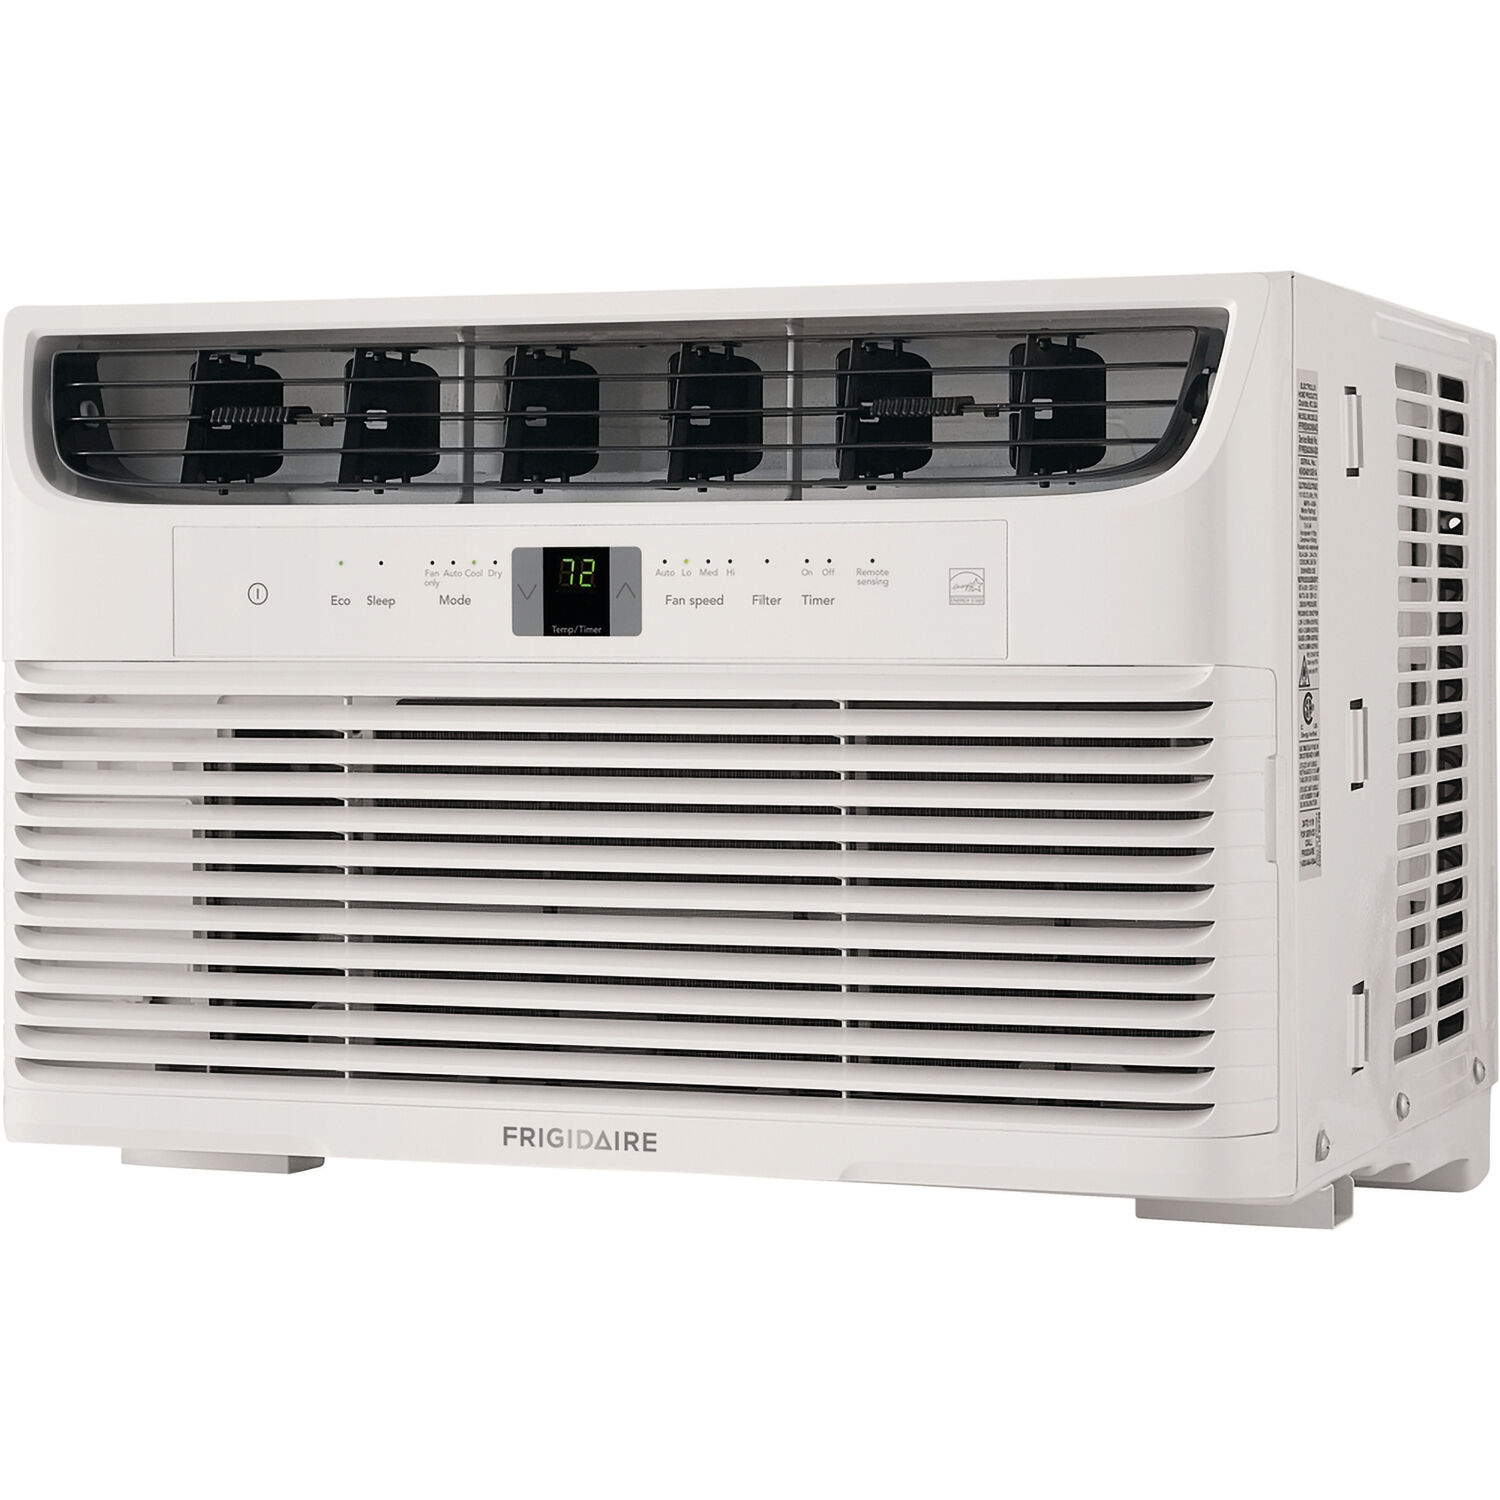 Frigidaire 8,000 BTU 115-Volt Window Air Conditioner, White, FFRE083WAE - image 5 of 9